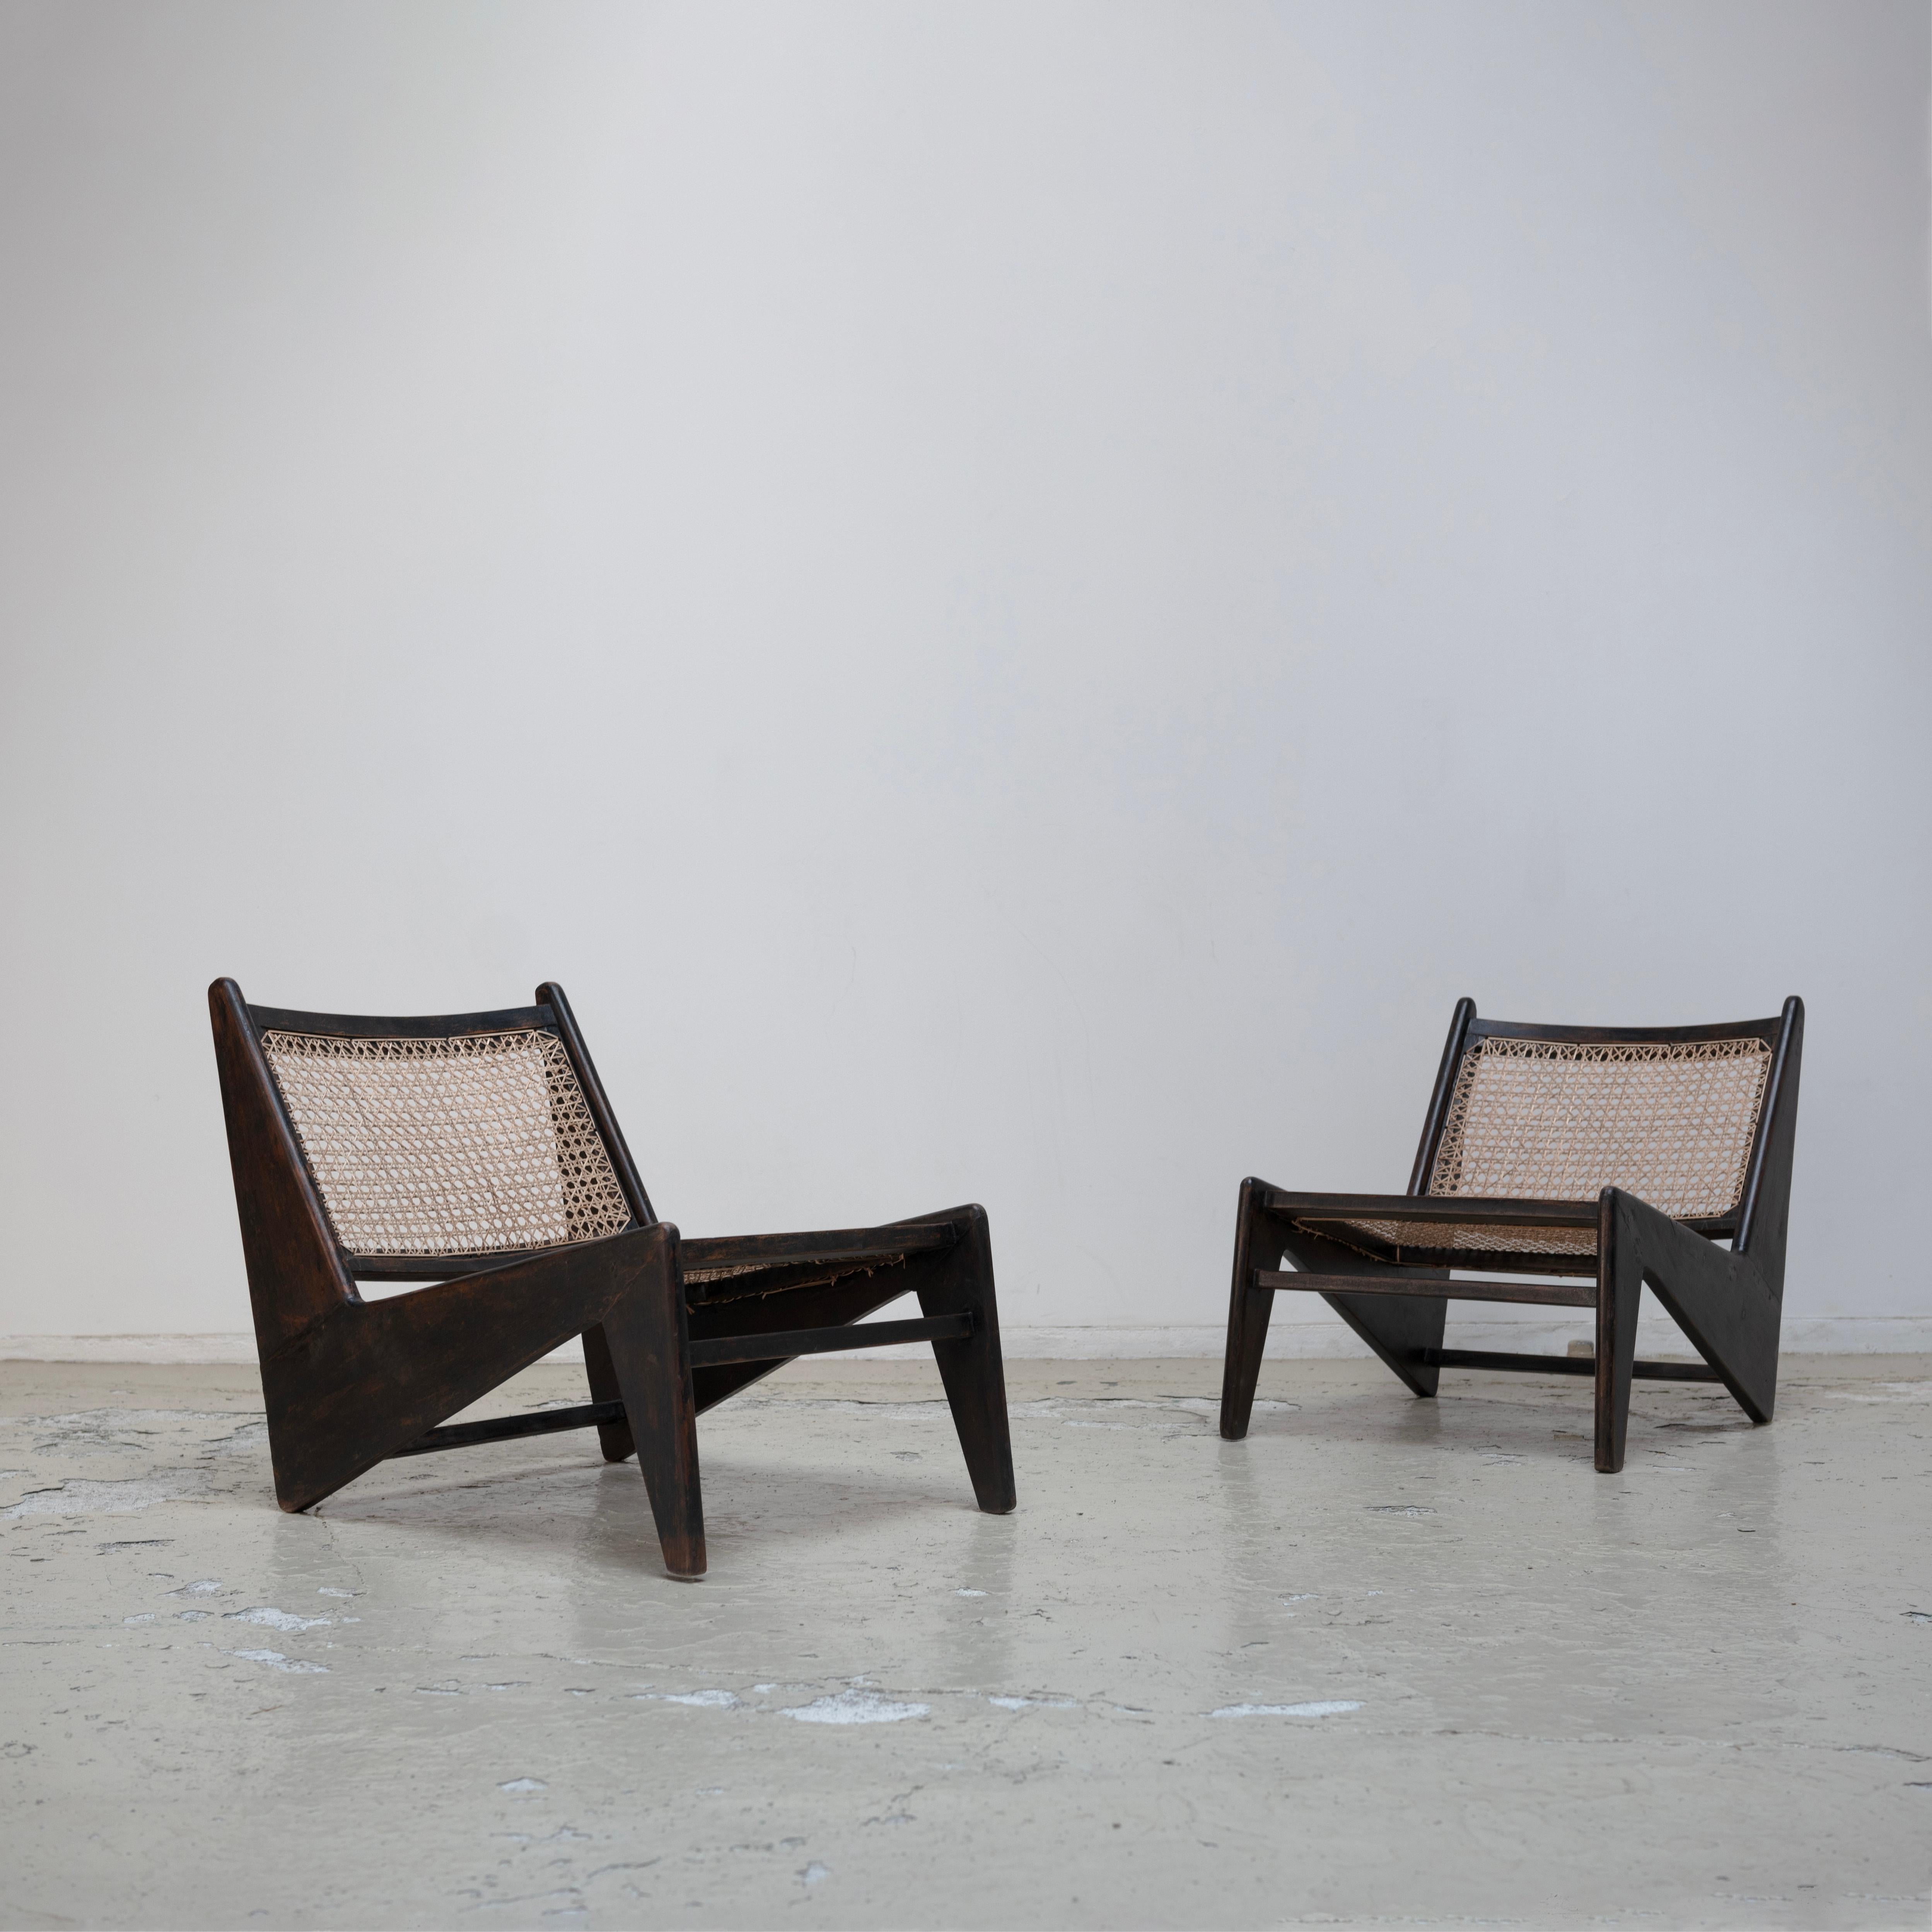 Pierre Jeanneret , Chaise Kangourou noire pour Chandigarh, Teck, années 1950
C'est très rare.
Le prix pour un ensemble de 2 chaises.